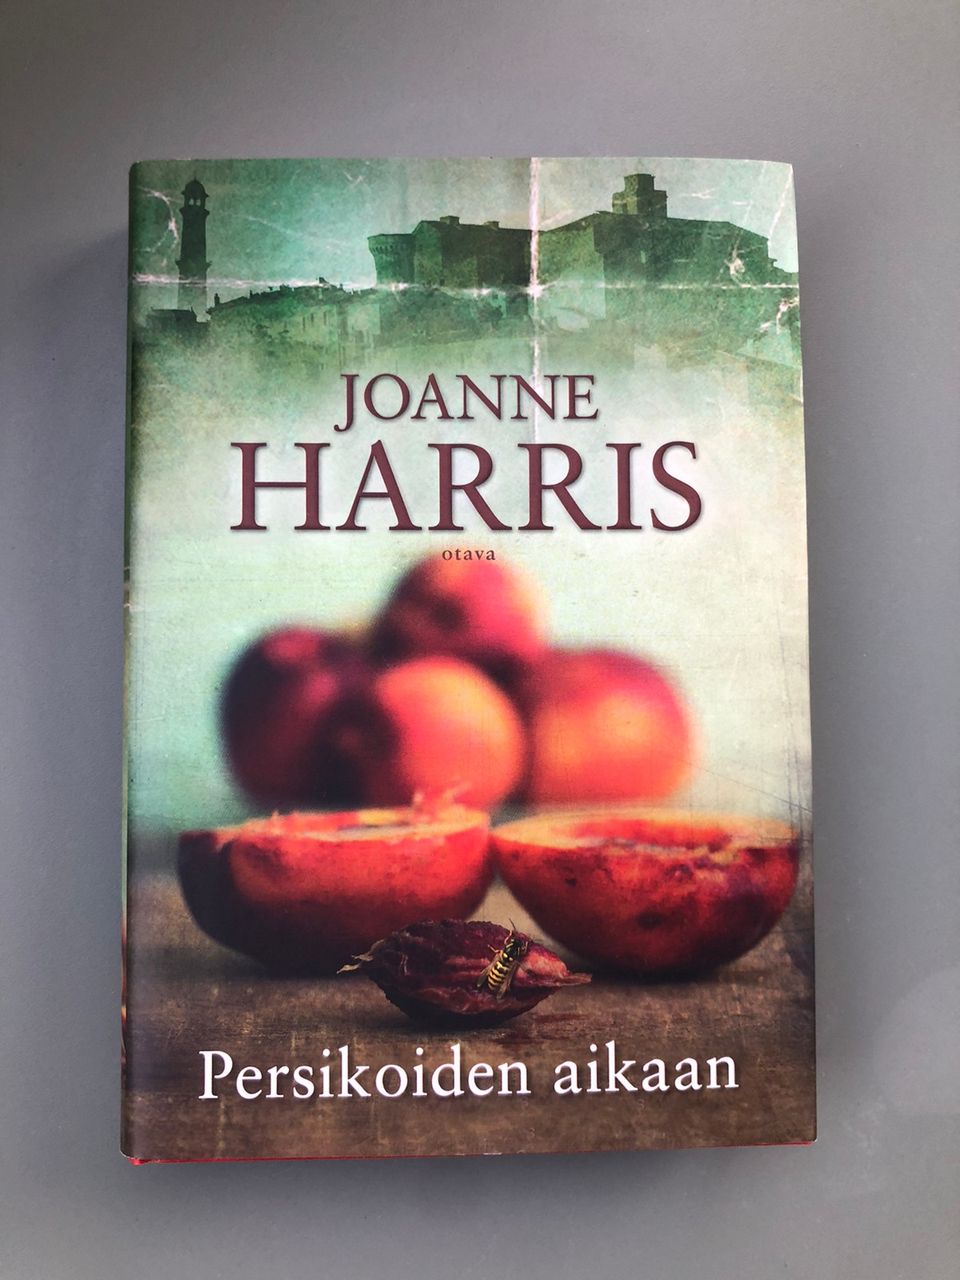 Joanne Harris: Persikoiden aikaan